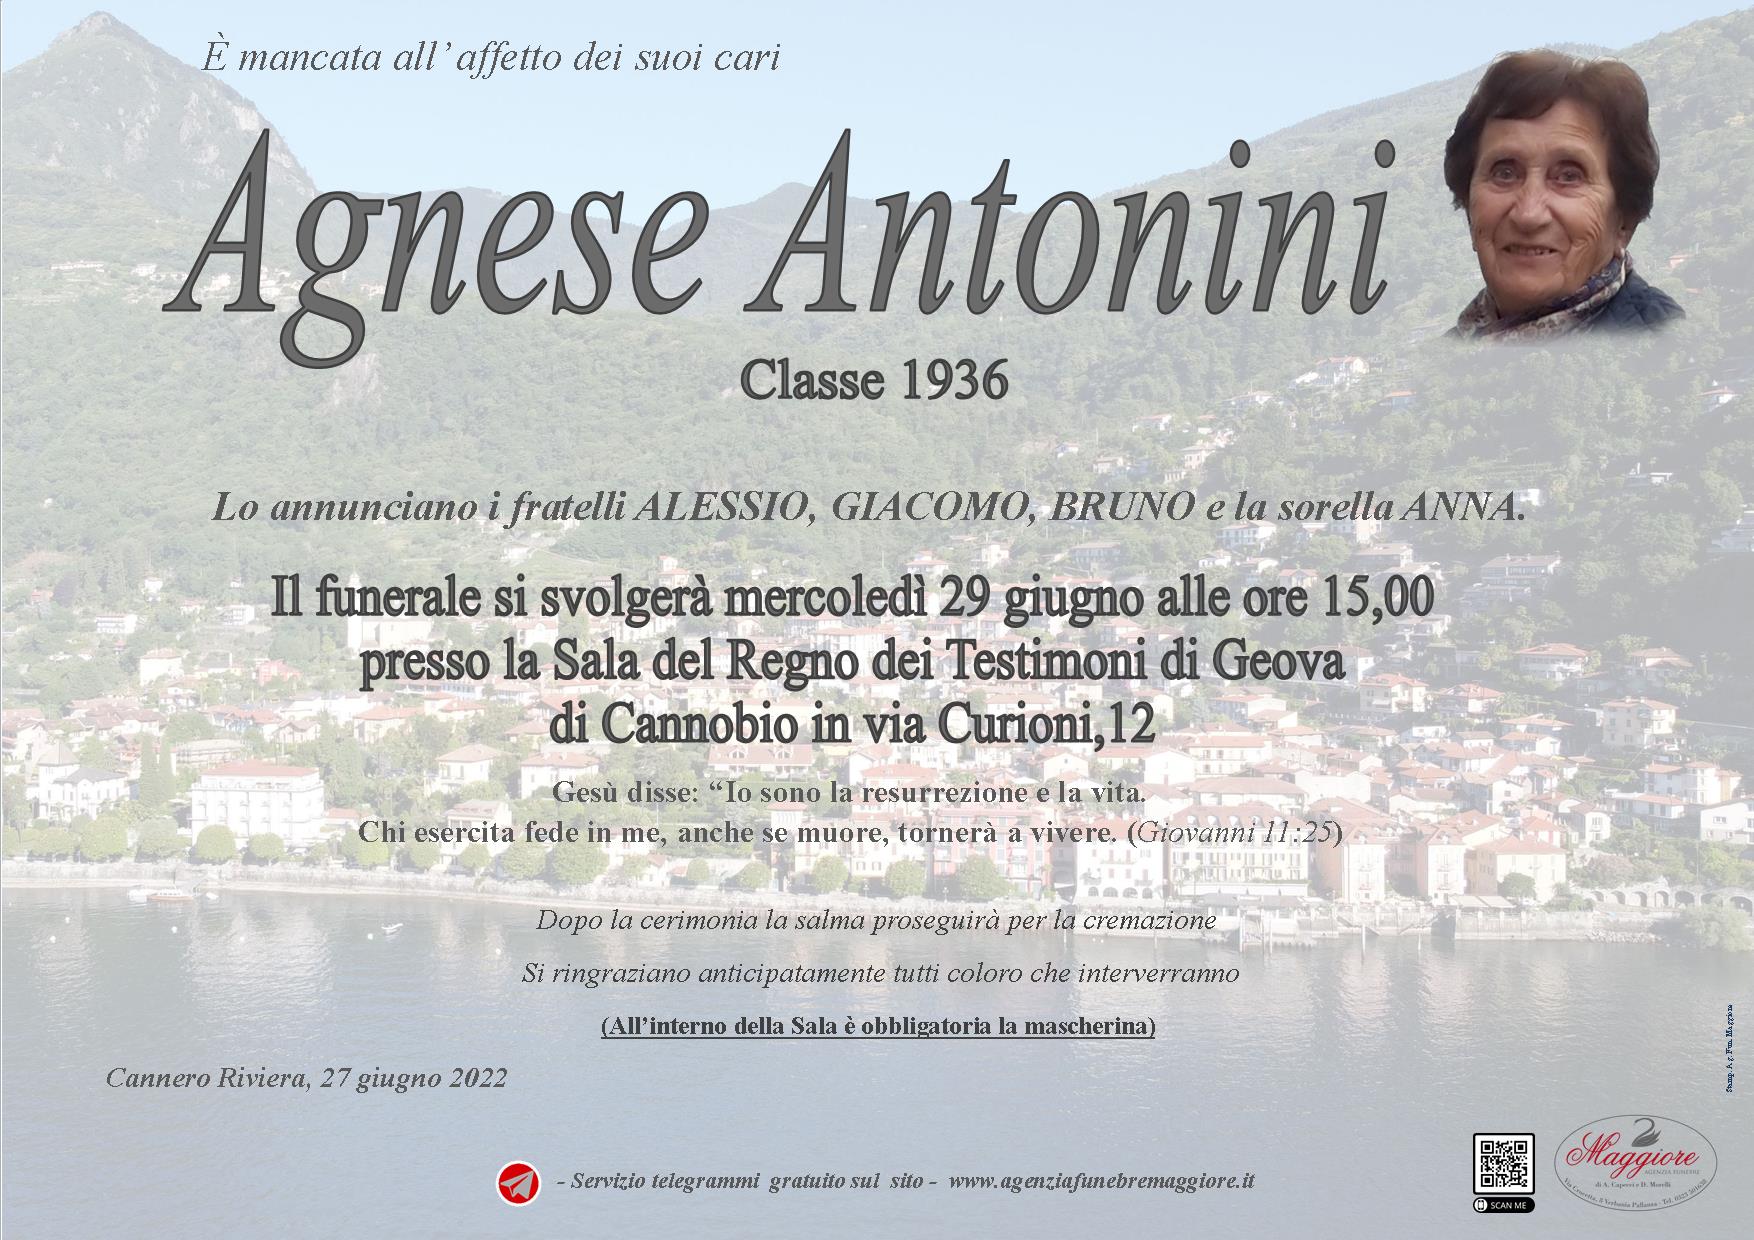 Agnese Antonini